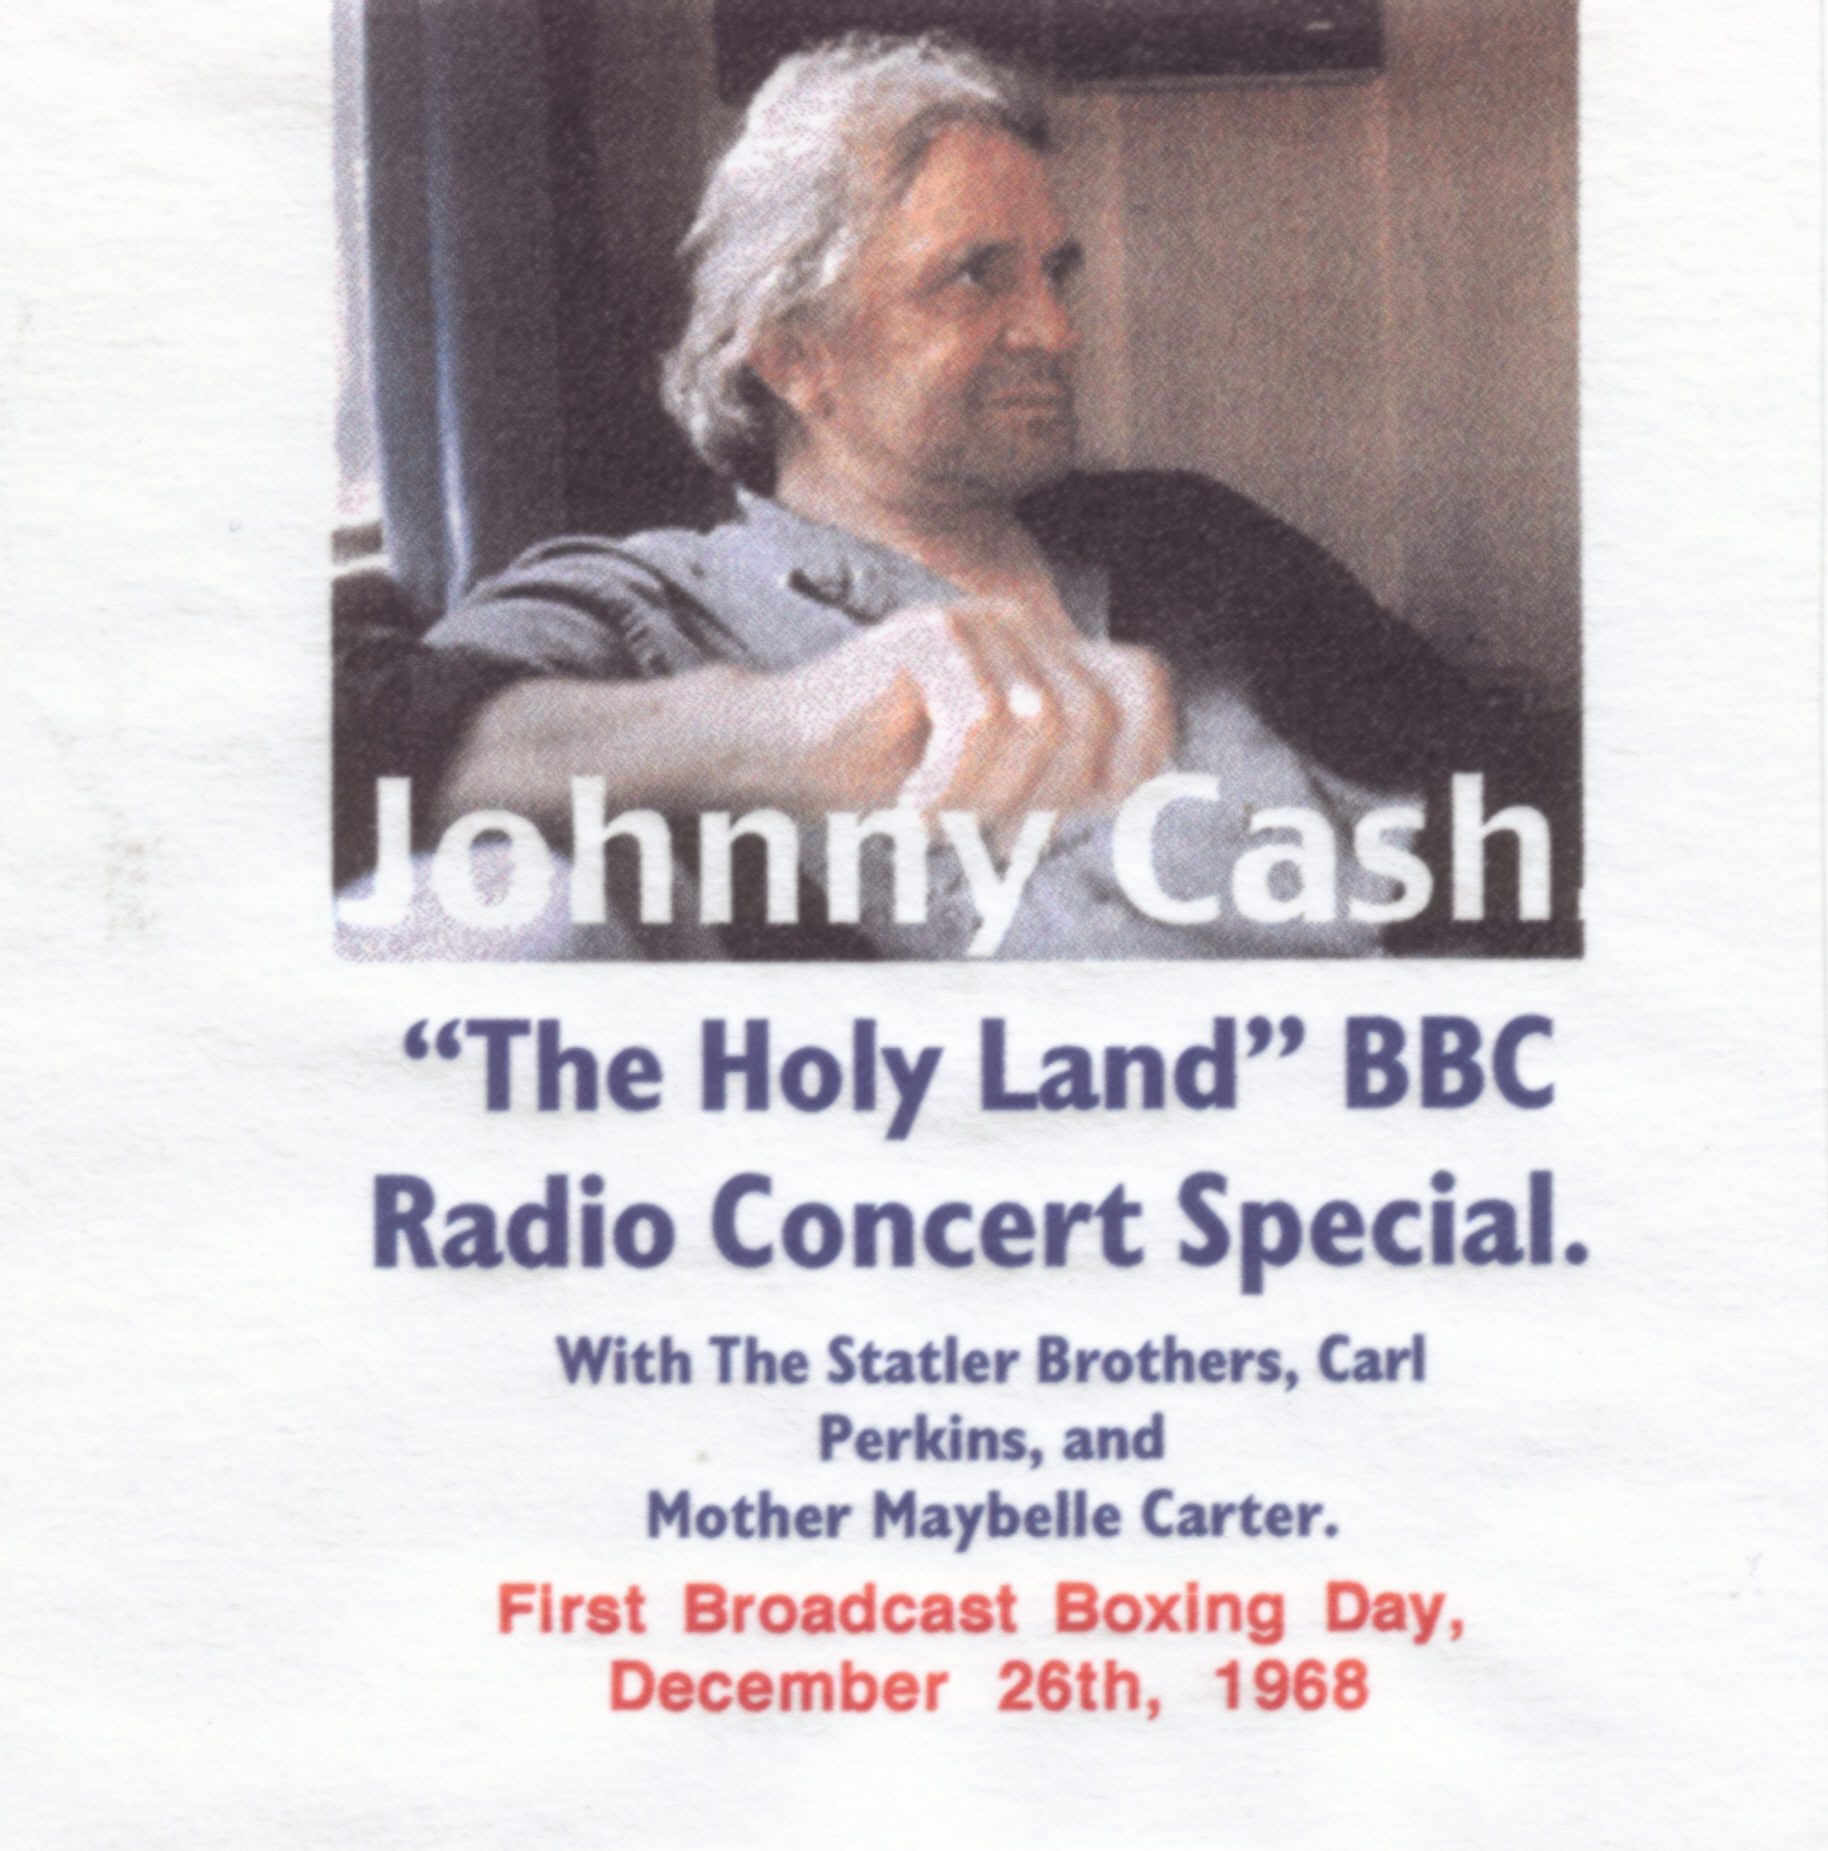 JohnnyCash1968-11-03BBCStudiosCamdenTownLondonUK (4).jpg